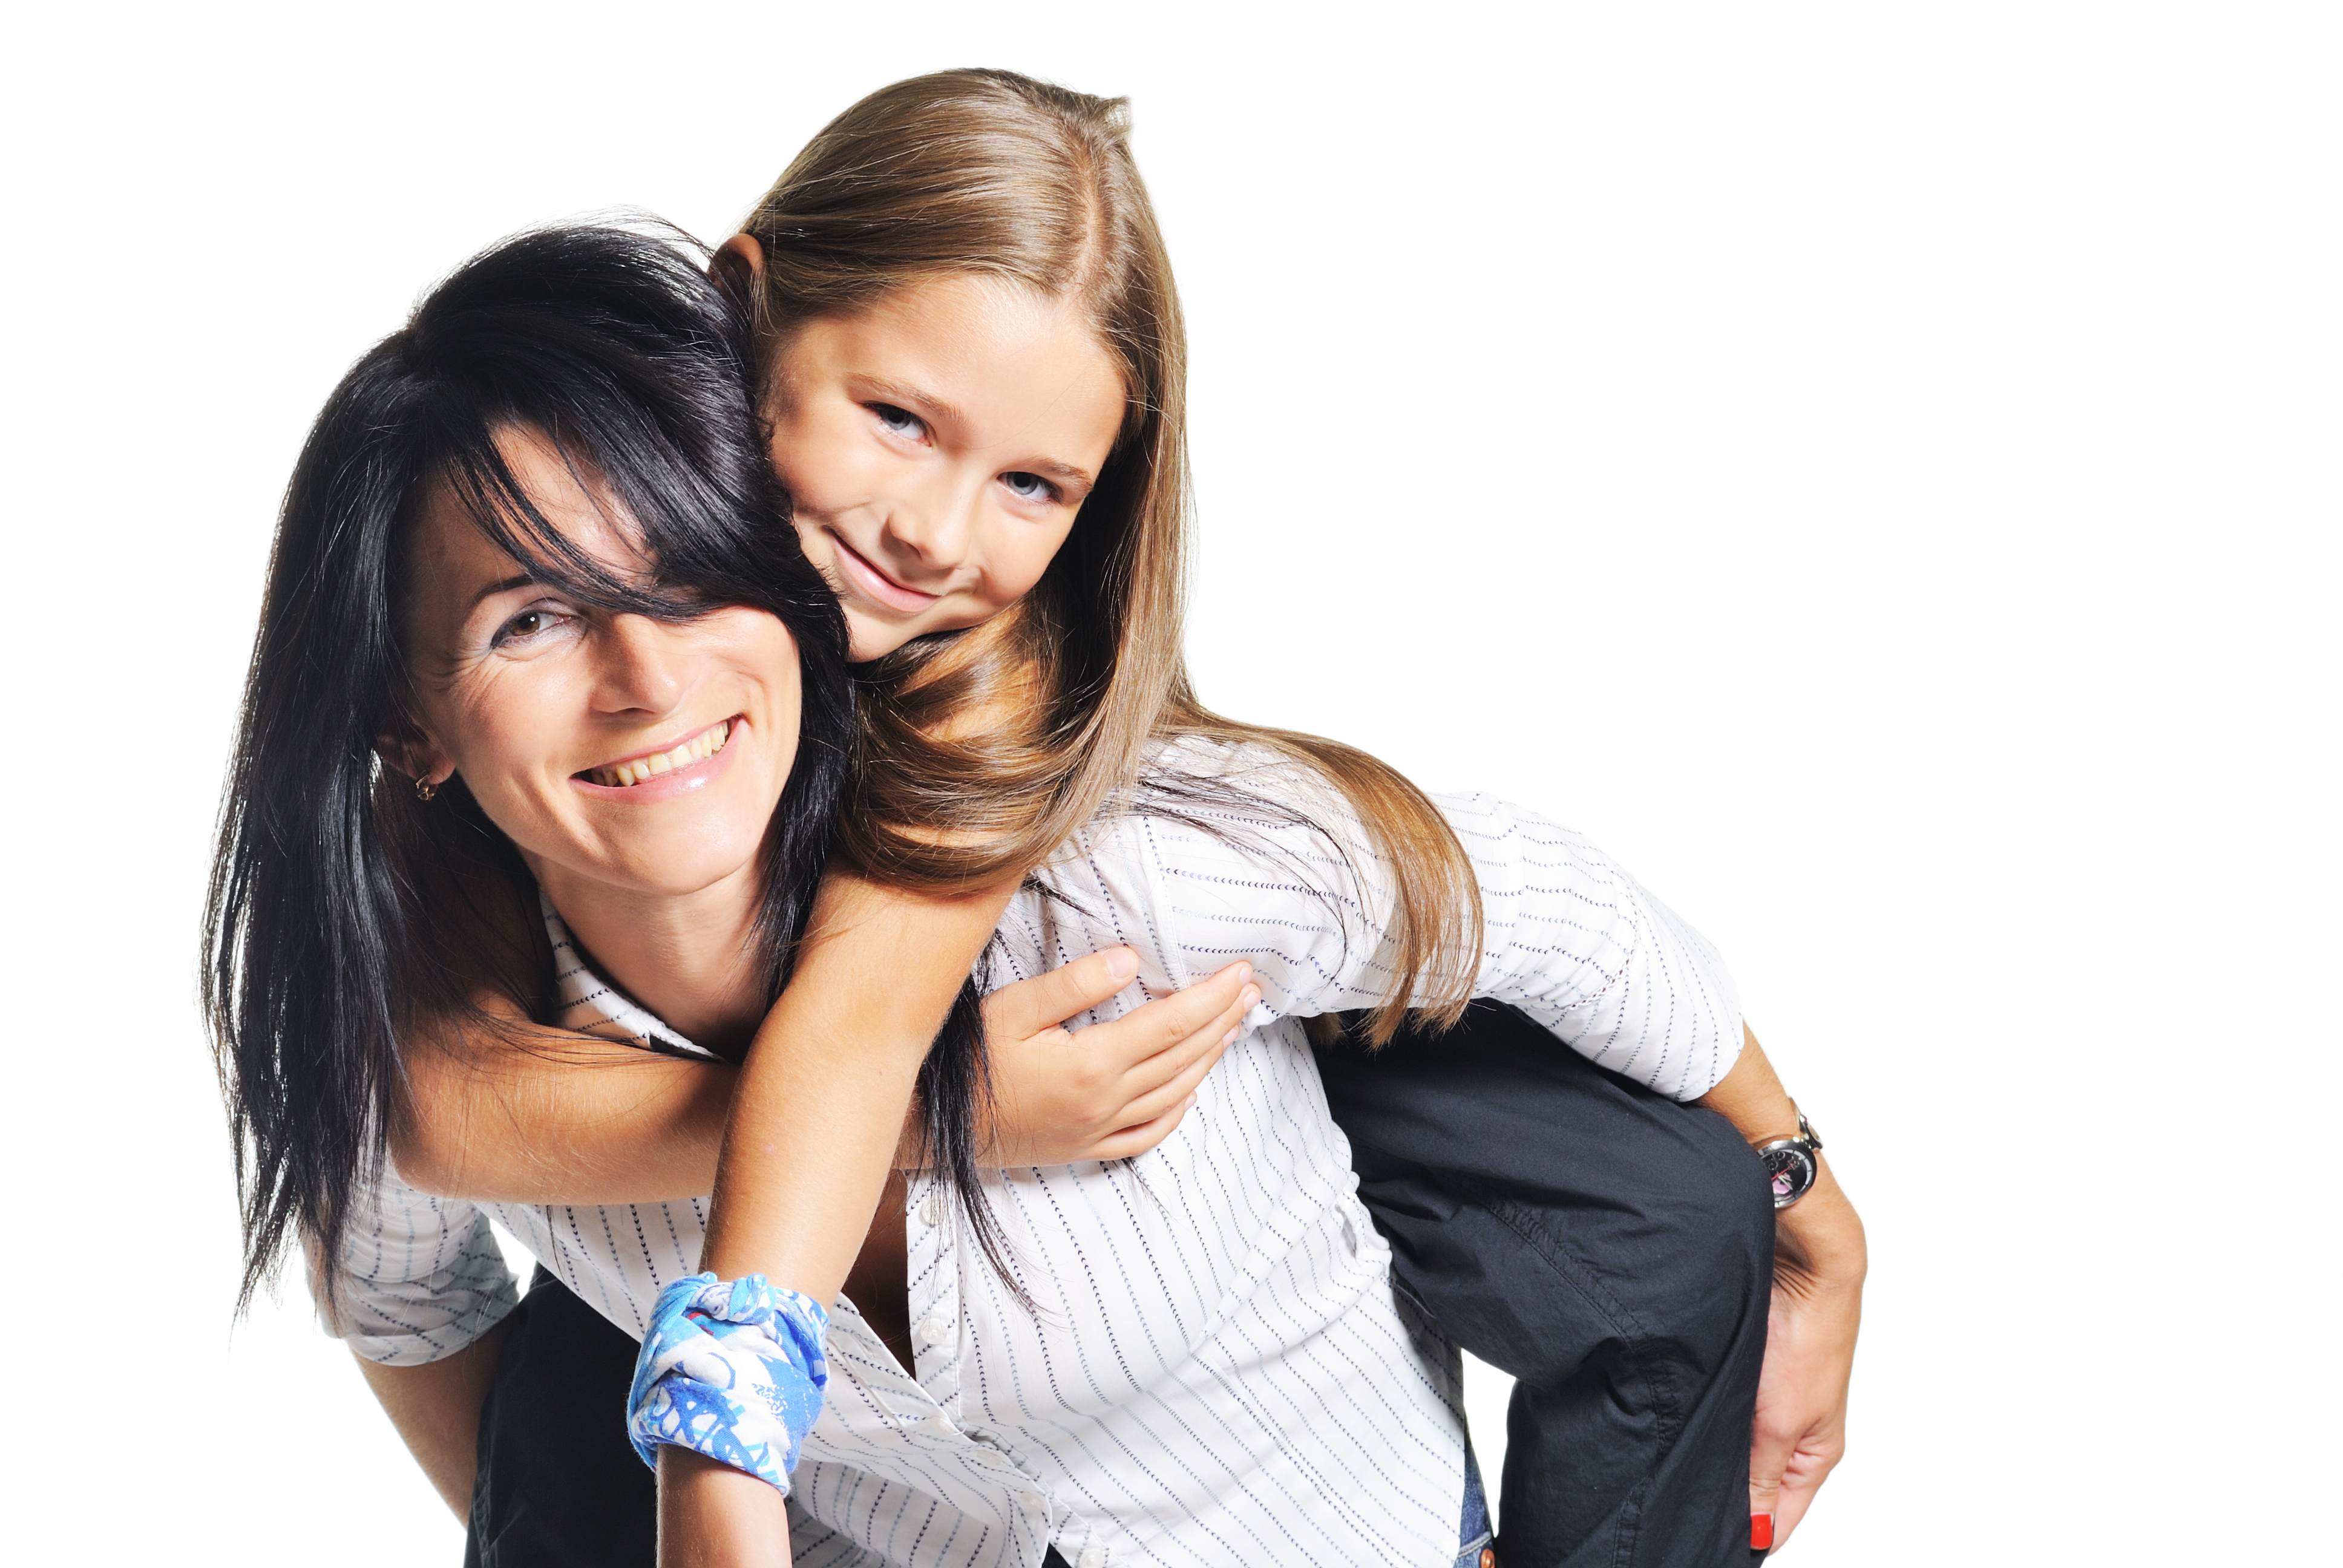 Une femme et une jeune adolescente montée sur son dos | Source : Shuttterstock